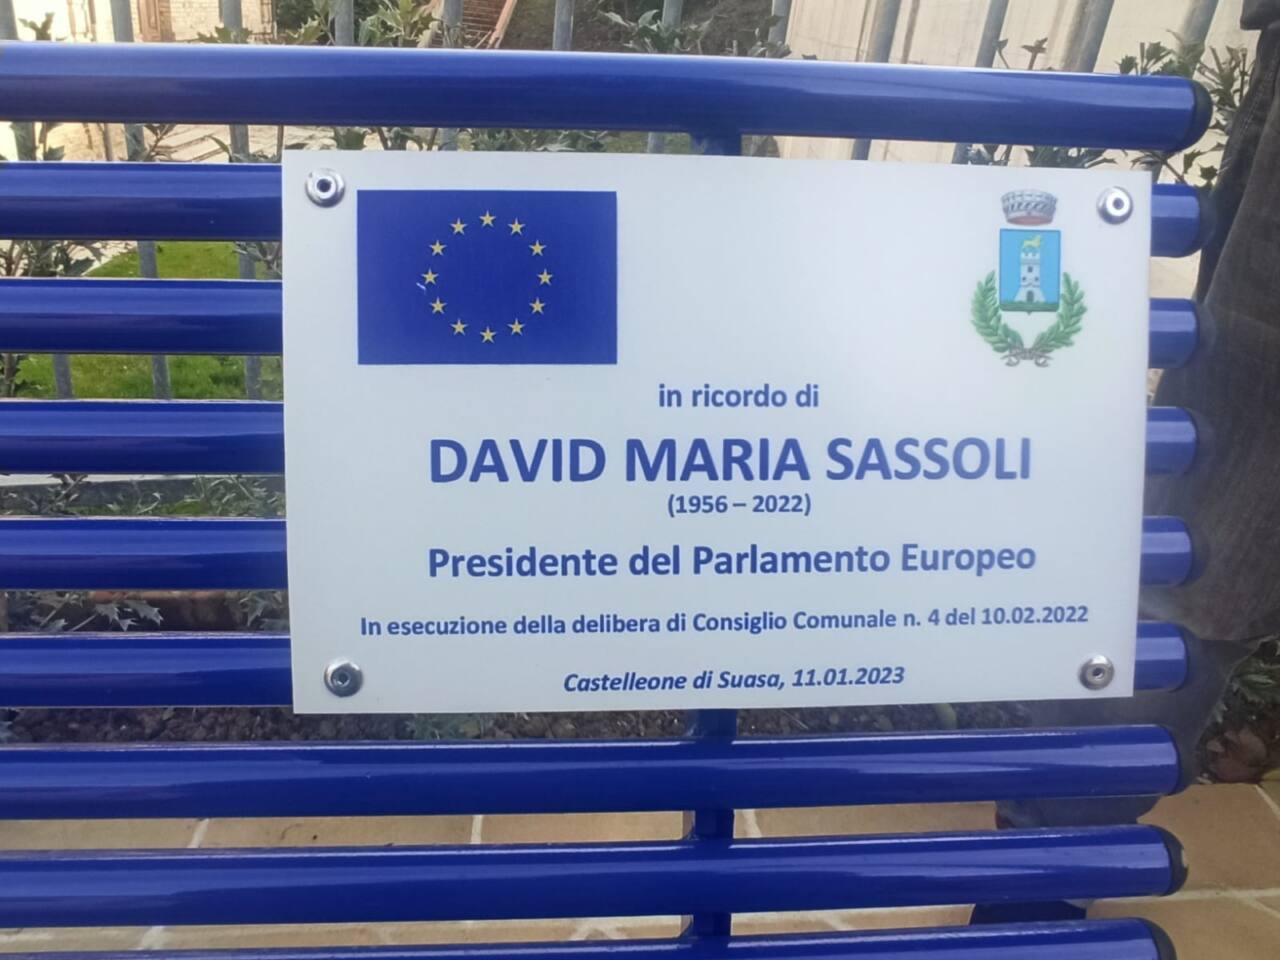 Inaugurata a Castelleone di Suasa la panchina europea in memoria di David Sassoli